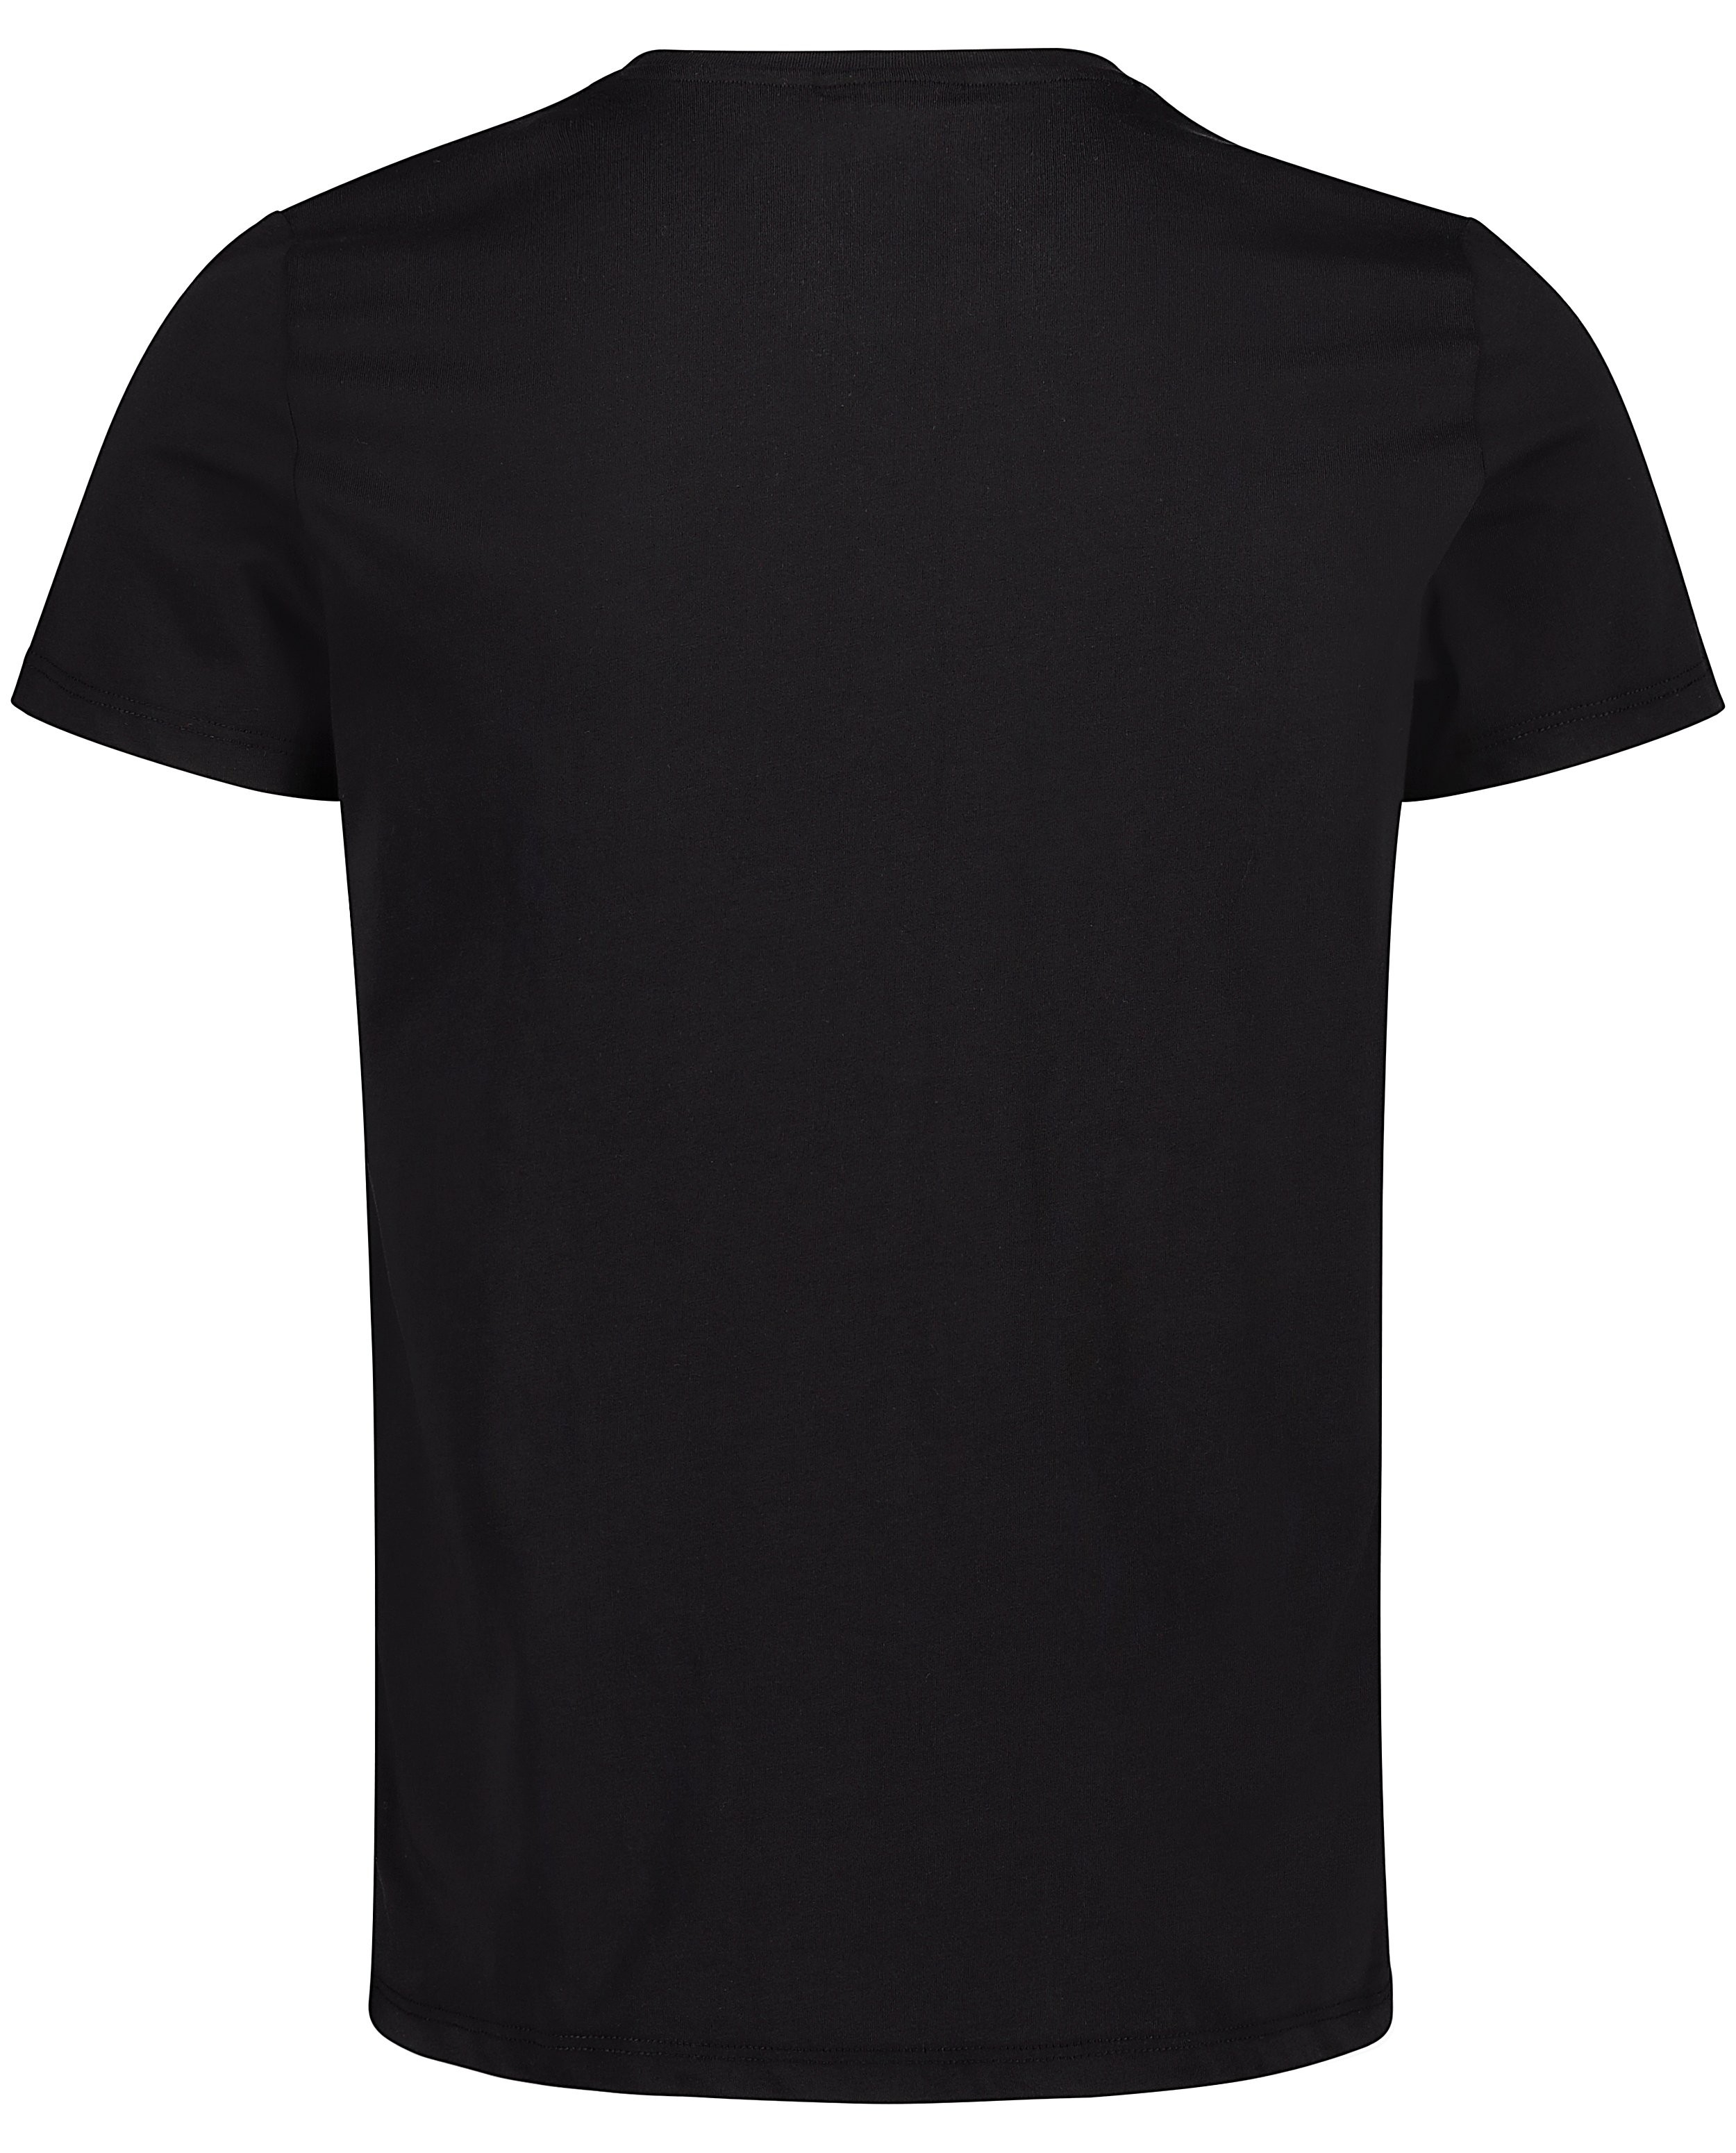 T-shirts - T-shirt noir avec imprimé